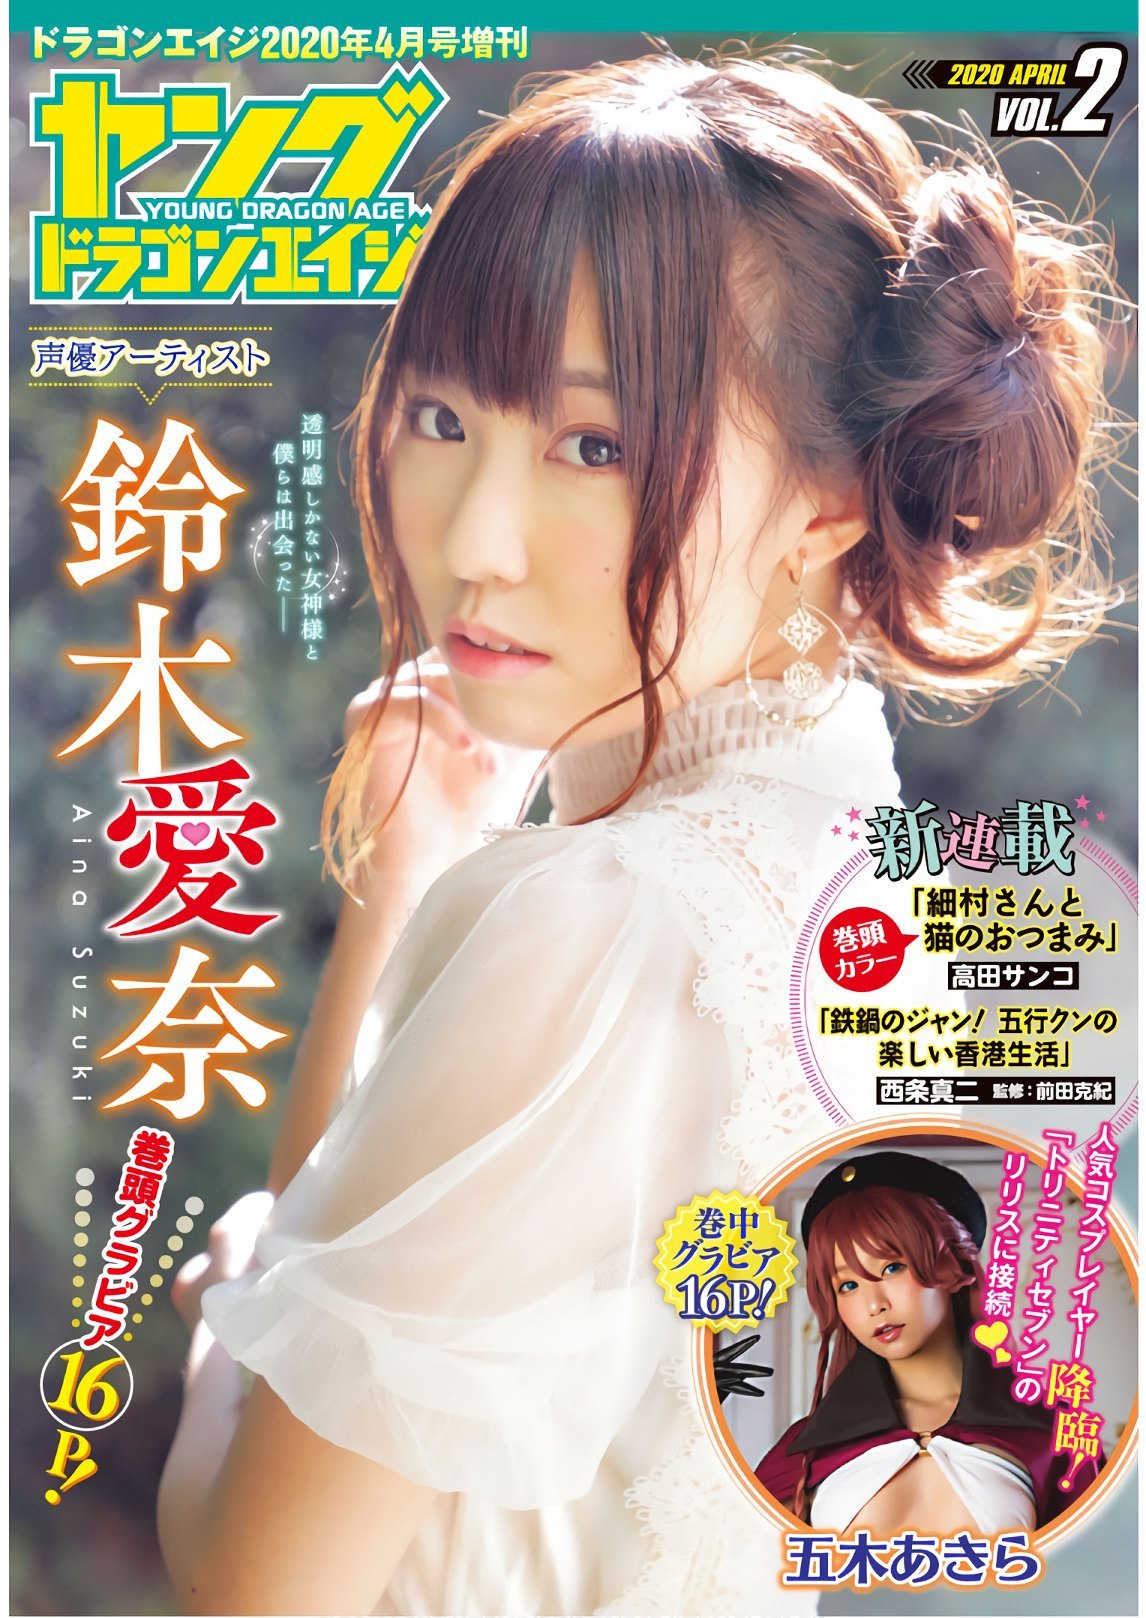 Aina Suzuki 鈴木愛奈, Dragon Age ドラゴンエイジ 2020年4月号 増刊 ヤングドラゴンエイジ Vol.02 - itotii